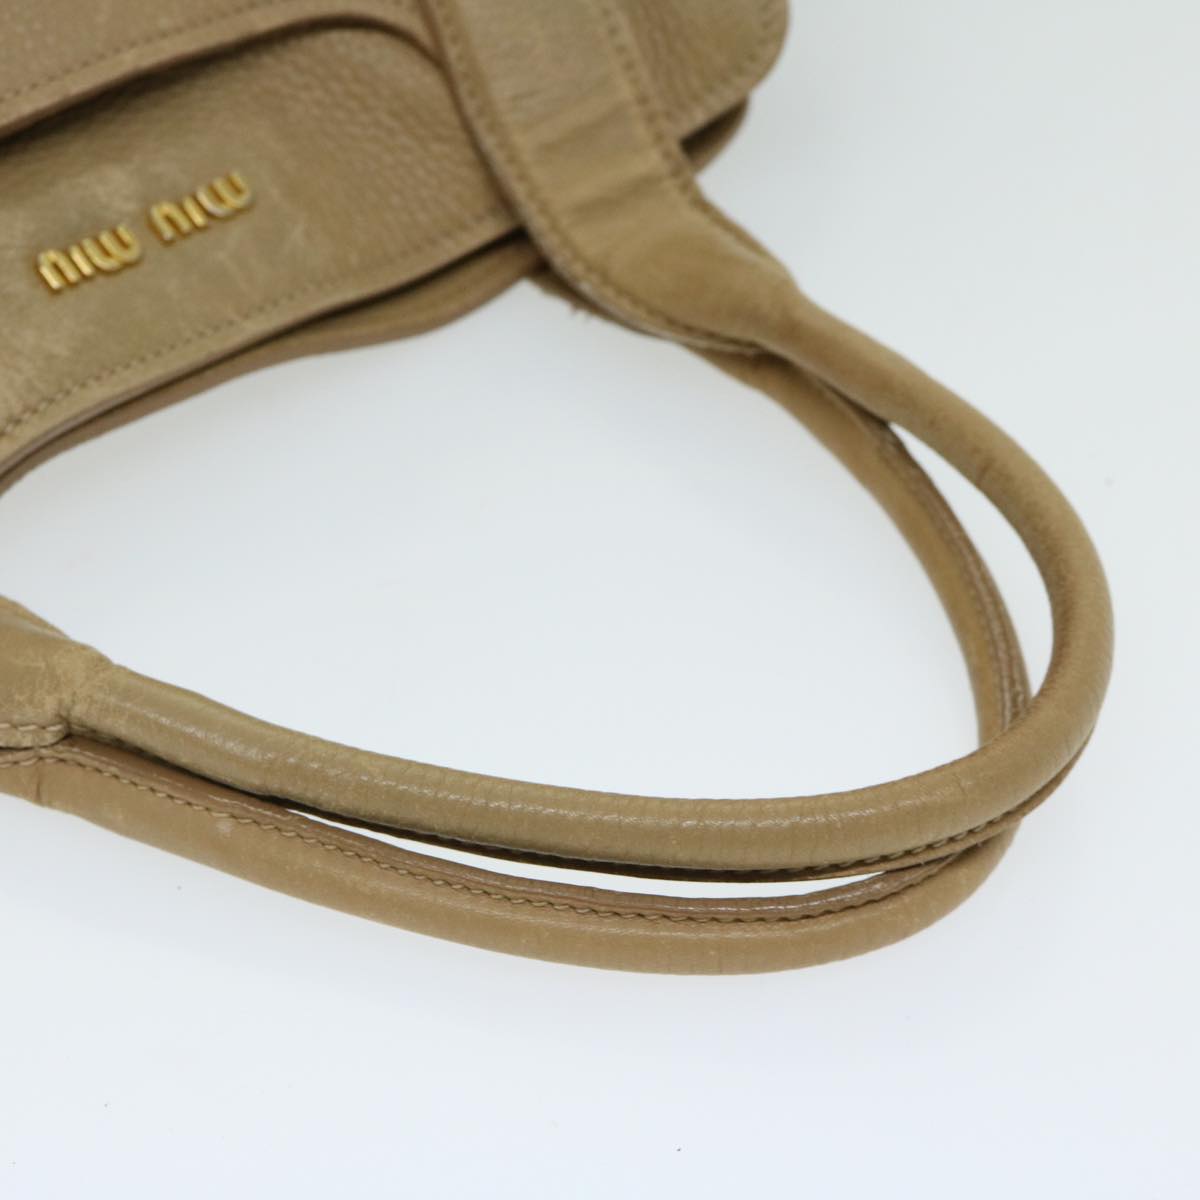 Miu Miu Hand Bag Leather Beige Auth hk1110